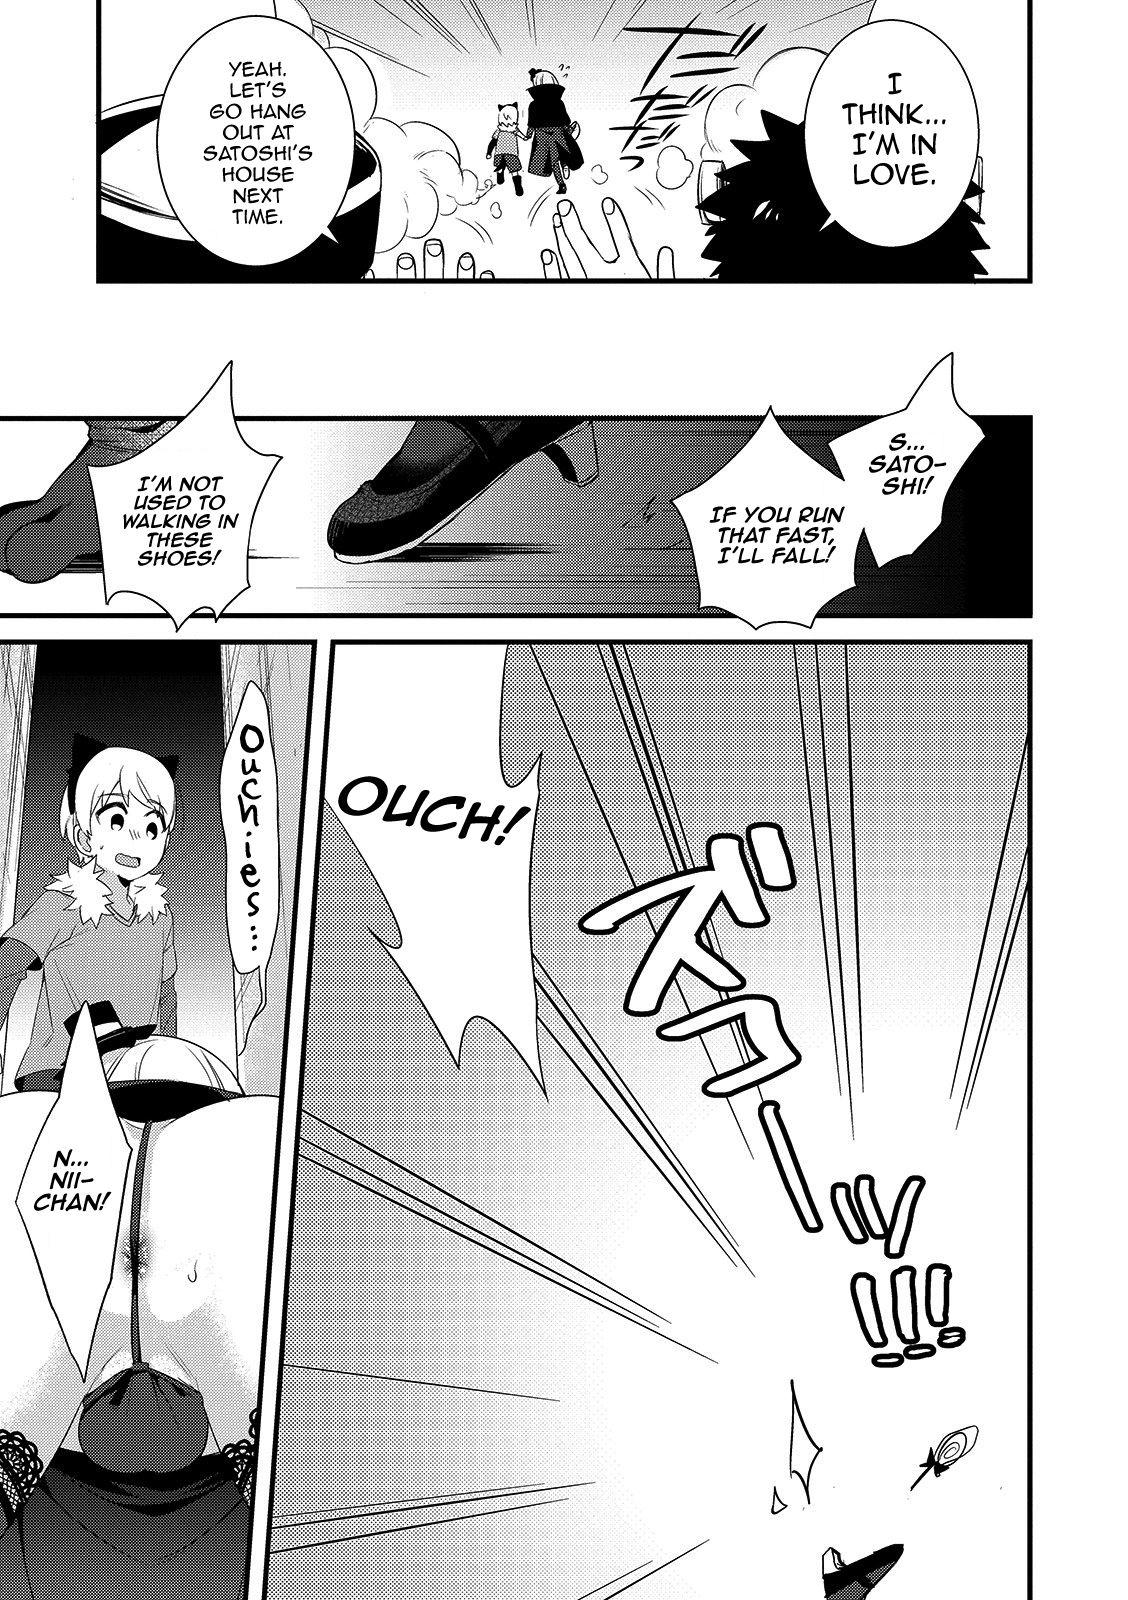 Lez Onii-chan nan dakara 5 Jeans - Page 7